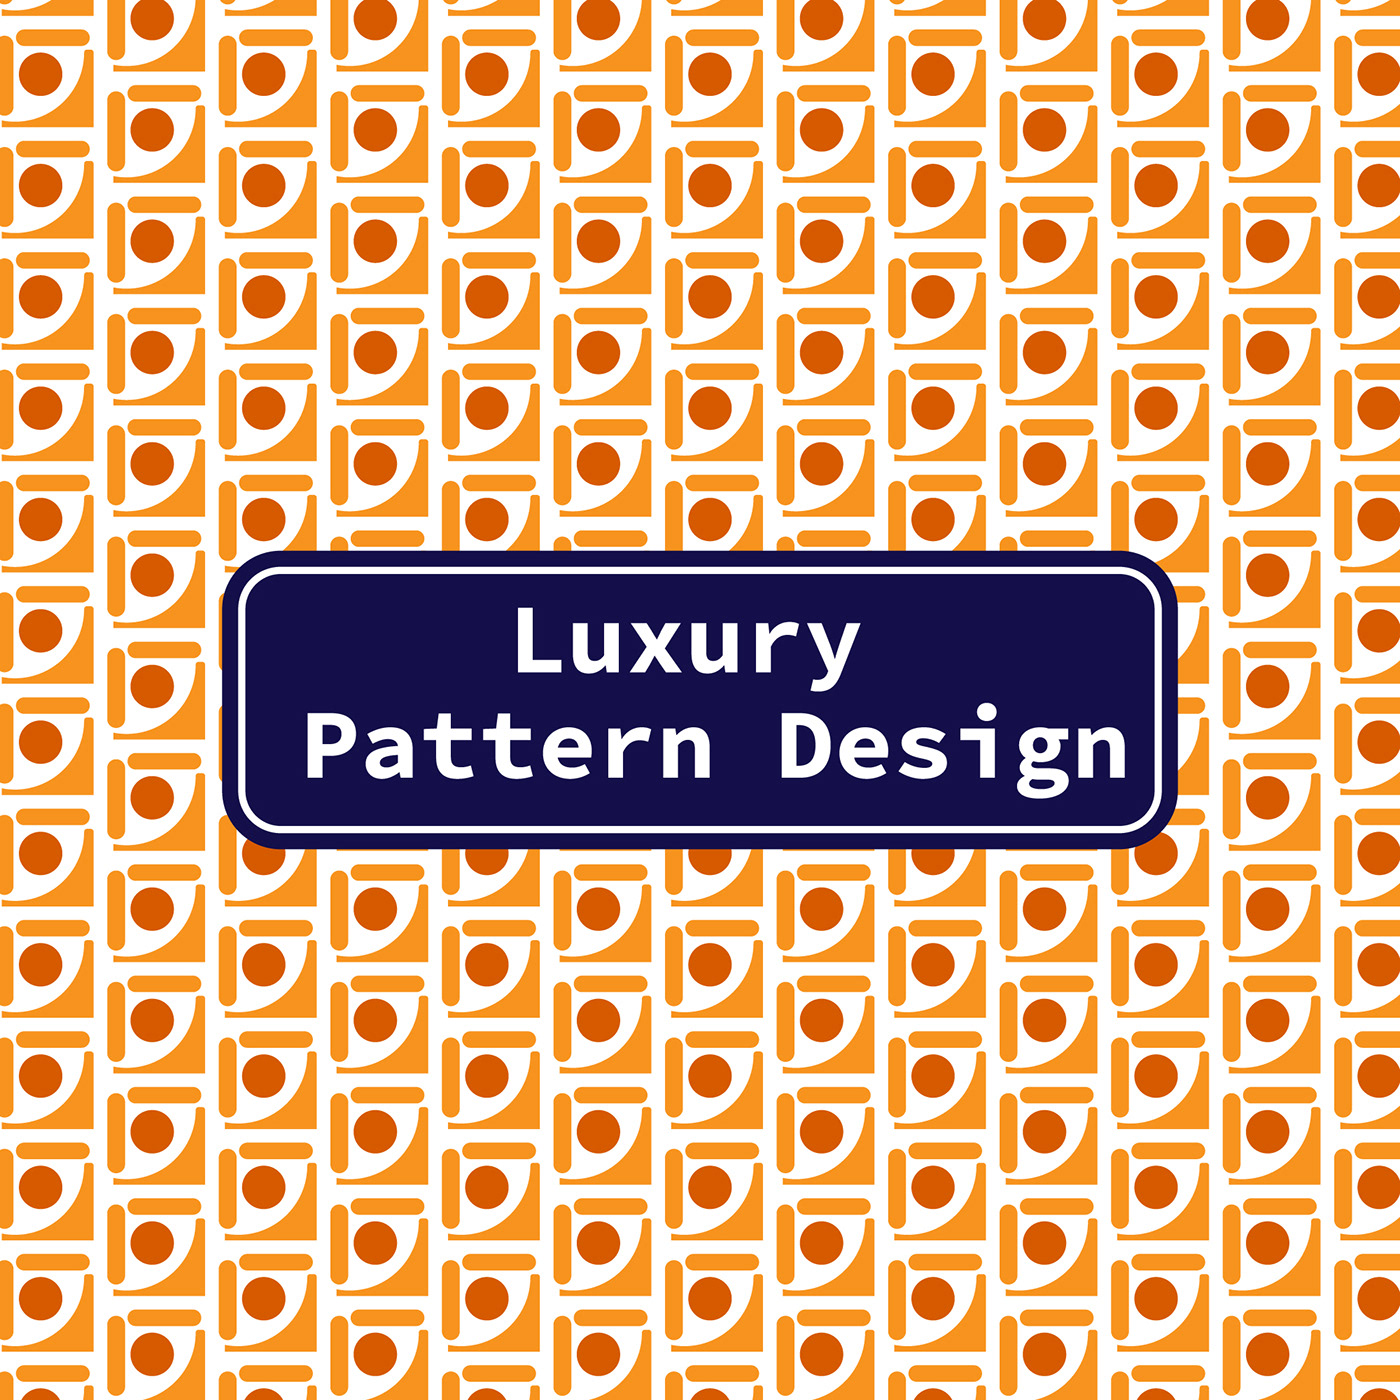 textile pattern design pattern design  pattern designs textile design  print LUXURY PATTERN DESIGN pattern designer pattern designing